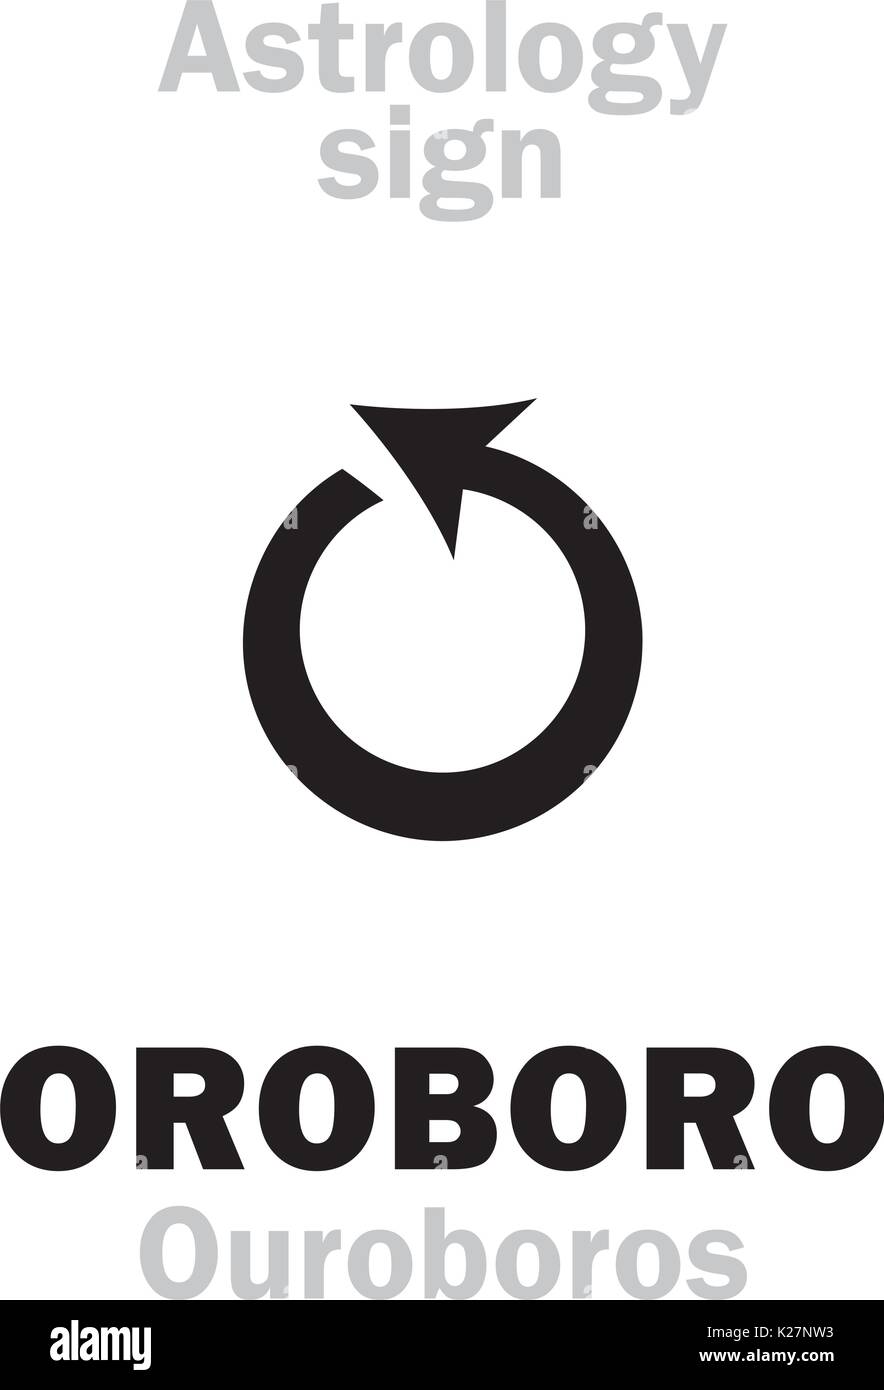 Astrologie Alphabet: OROBORO (ouroboros), Schlange, die ihren eigenen Schwanz verschlingt. Hieroglyphen Zeichen Zeichen (Symbol). Stock Vektor